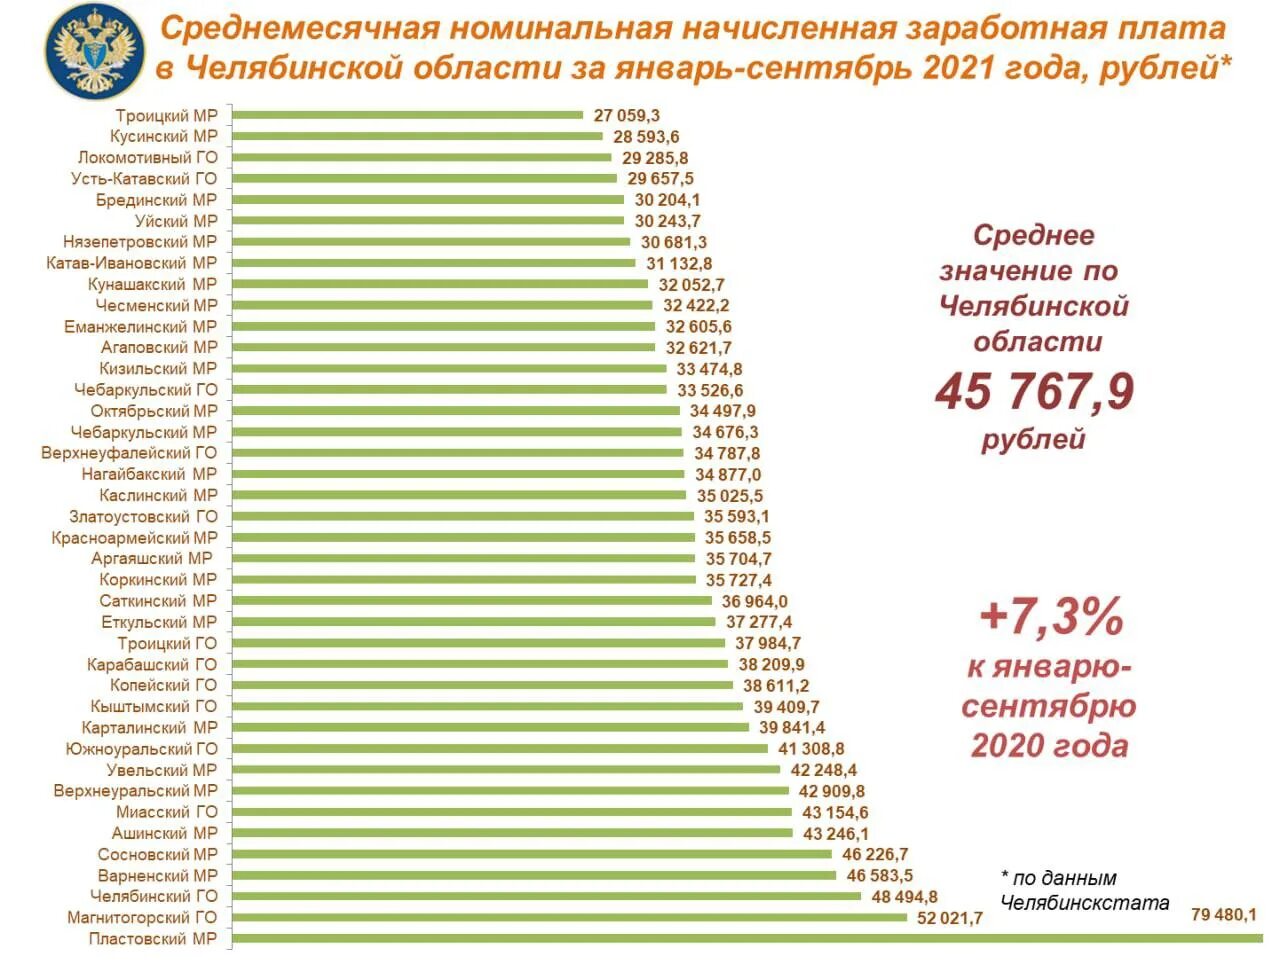 Высокая зарплата. Самая высокая средняя зарплата. Средняя зарплата в Челябинской области. Средняя заработная плата в Челябинской области.